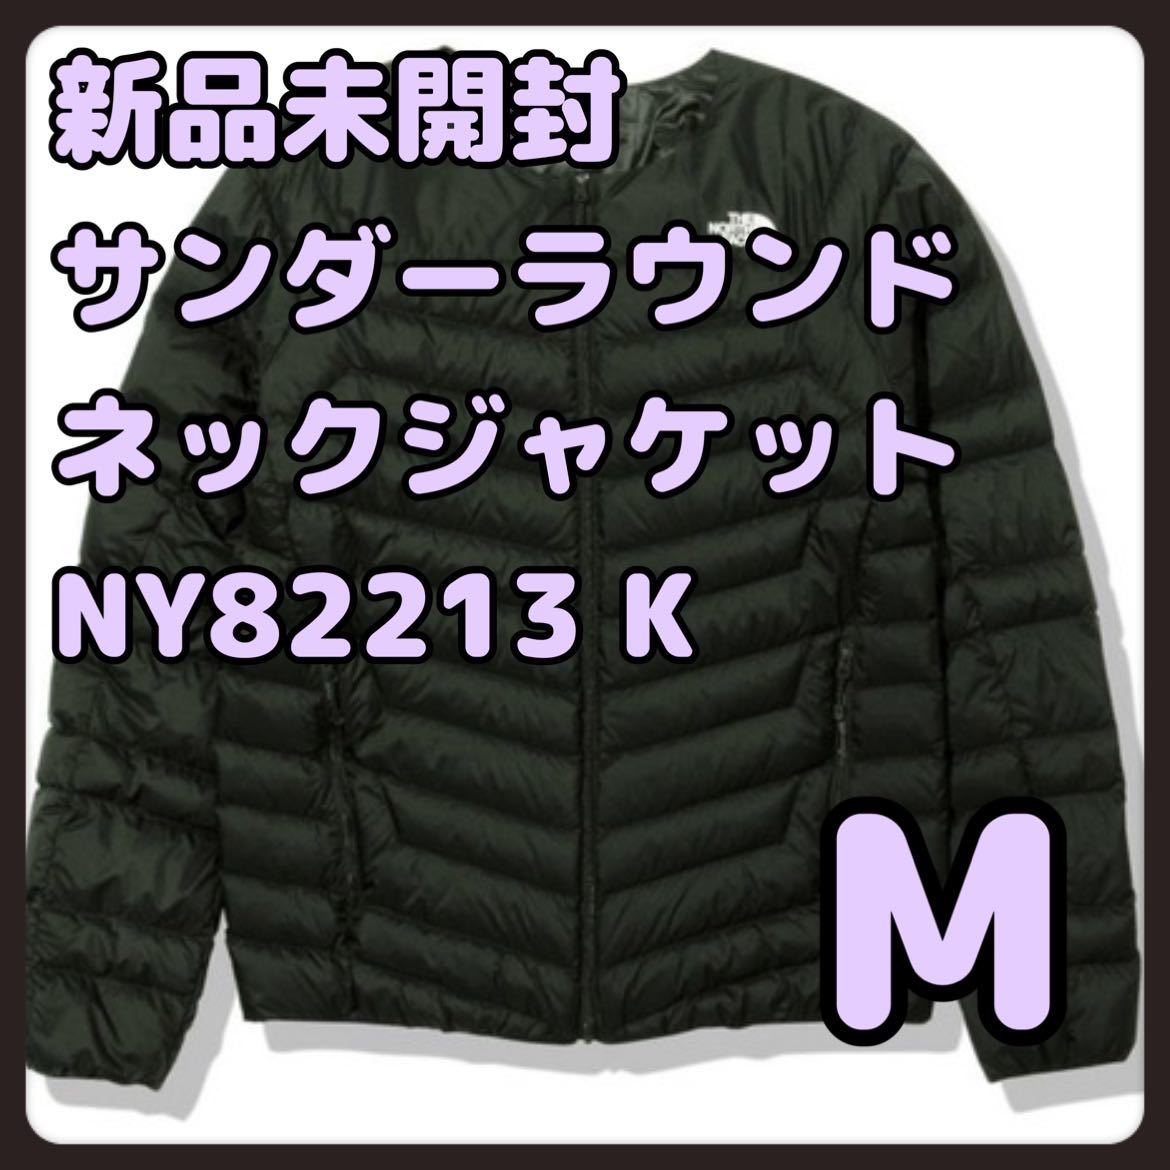 あなたにおすすめの商品 NY82213 ブラック Mサイズ サンダーラウンドネックジャケット K Mサイズ